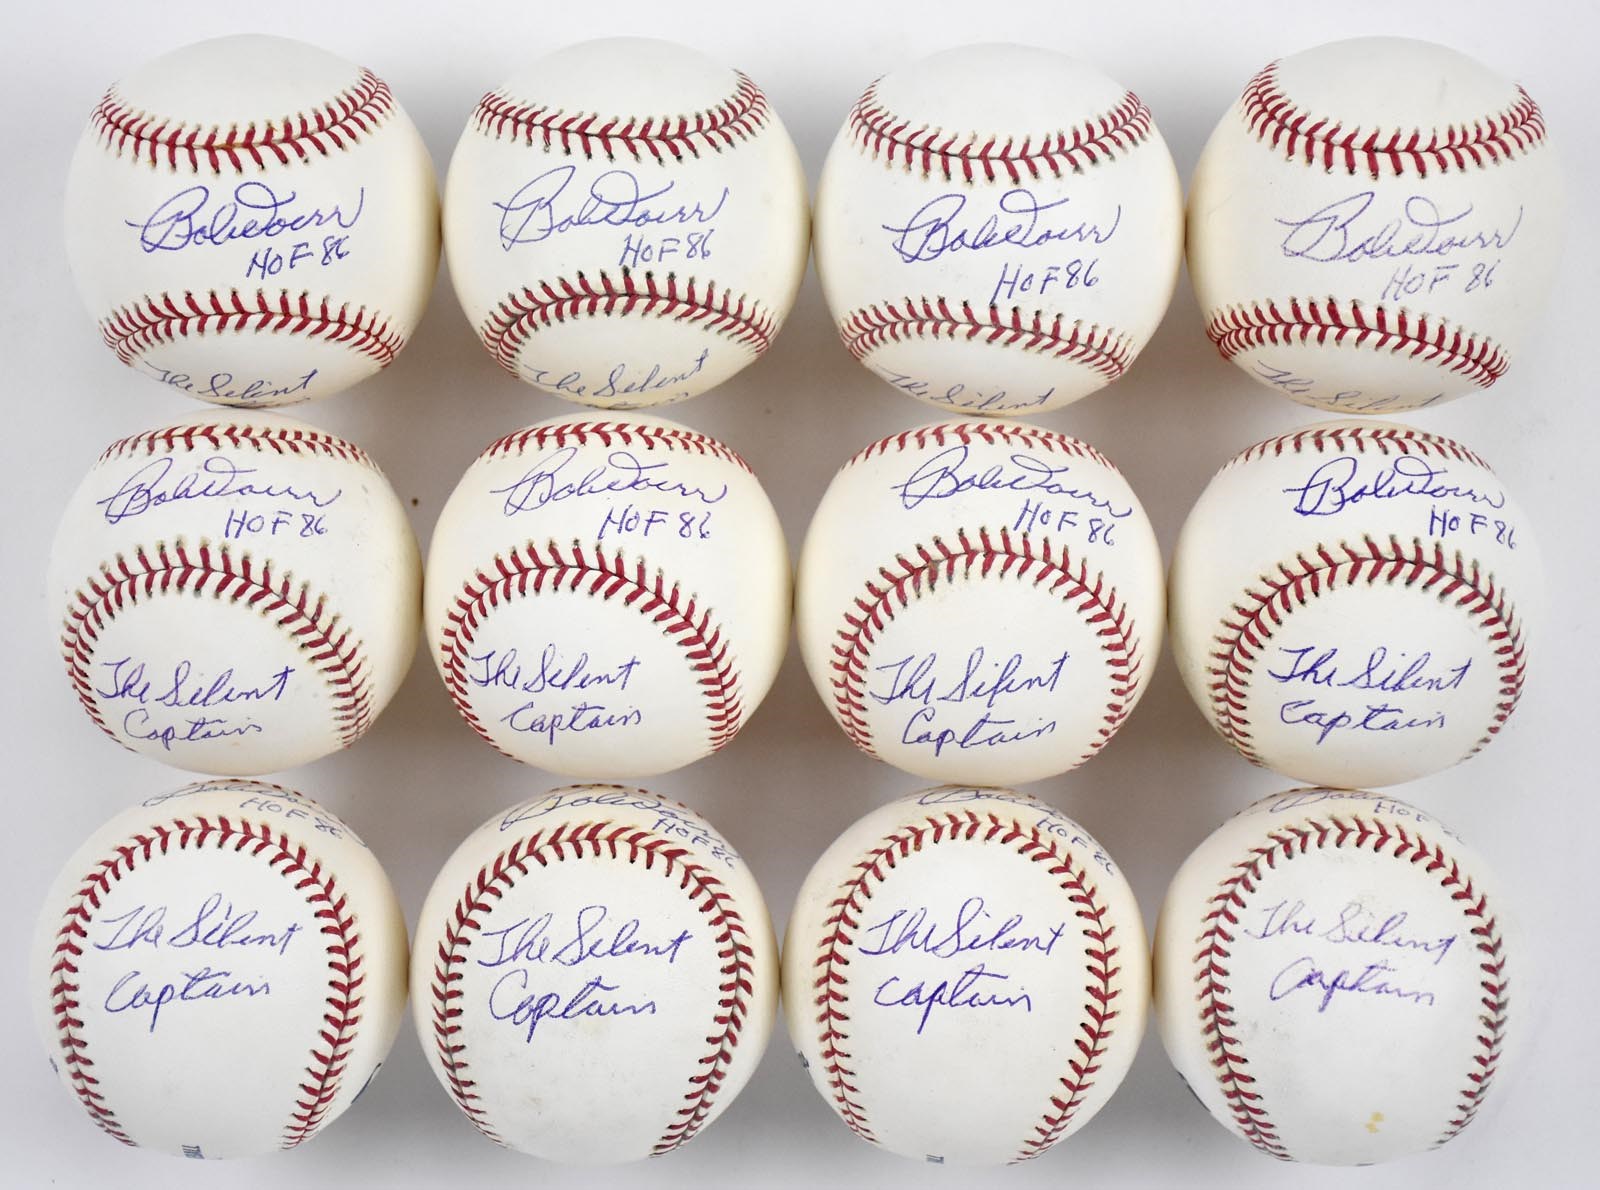 Boston Sports - One Dozen Bobby Doerr "The Silent Captain" Single Signed Baseballs (12)